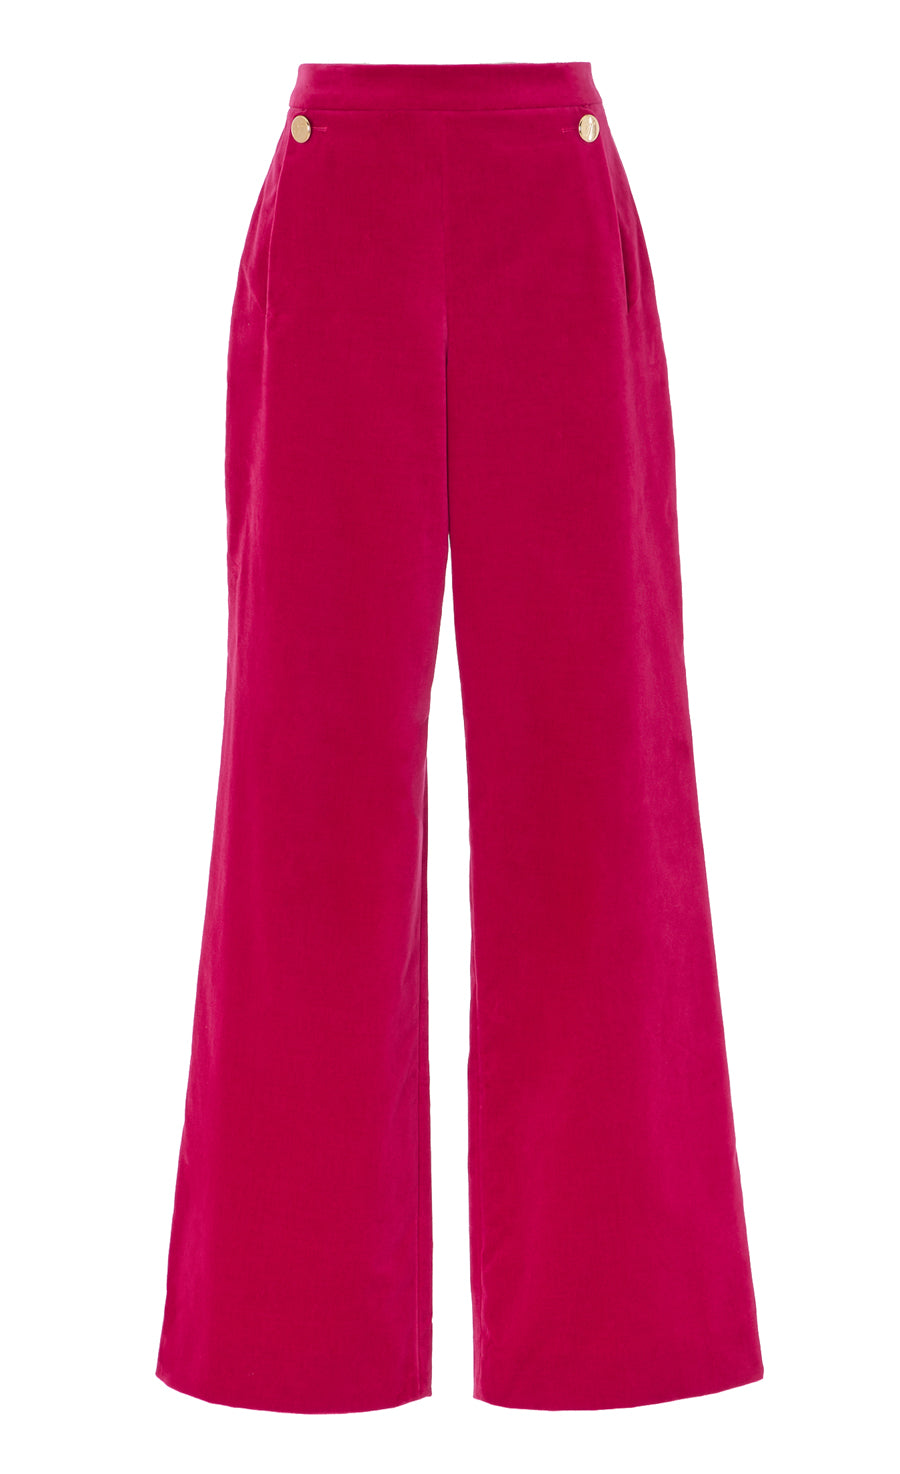 ATTENTIF PARIS LADIES Hot Pink Velvet Trouser Single Breasted Suit Size 12  £45.00 - PicClick UK